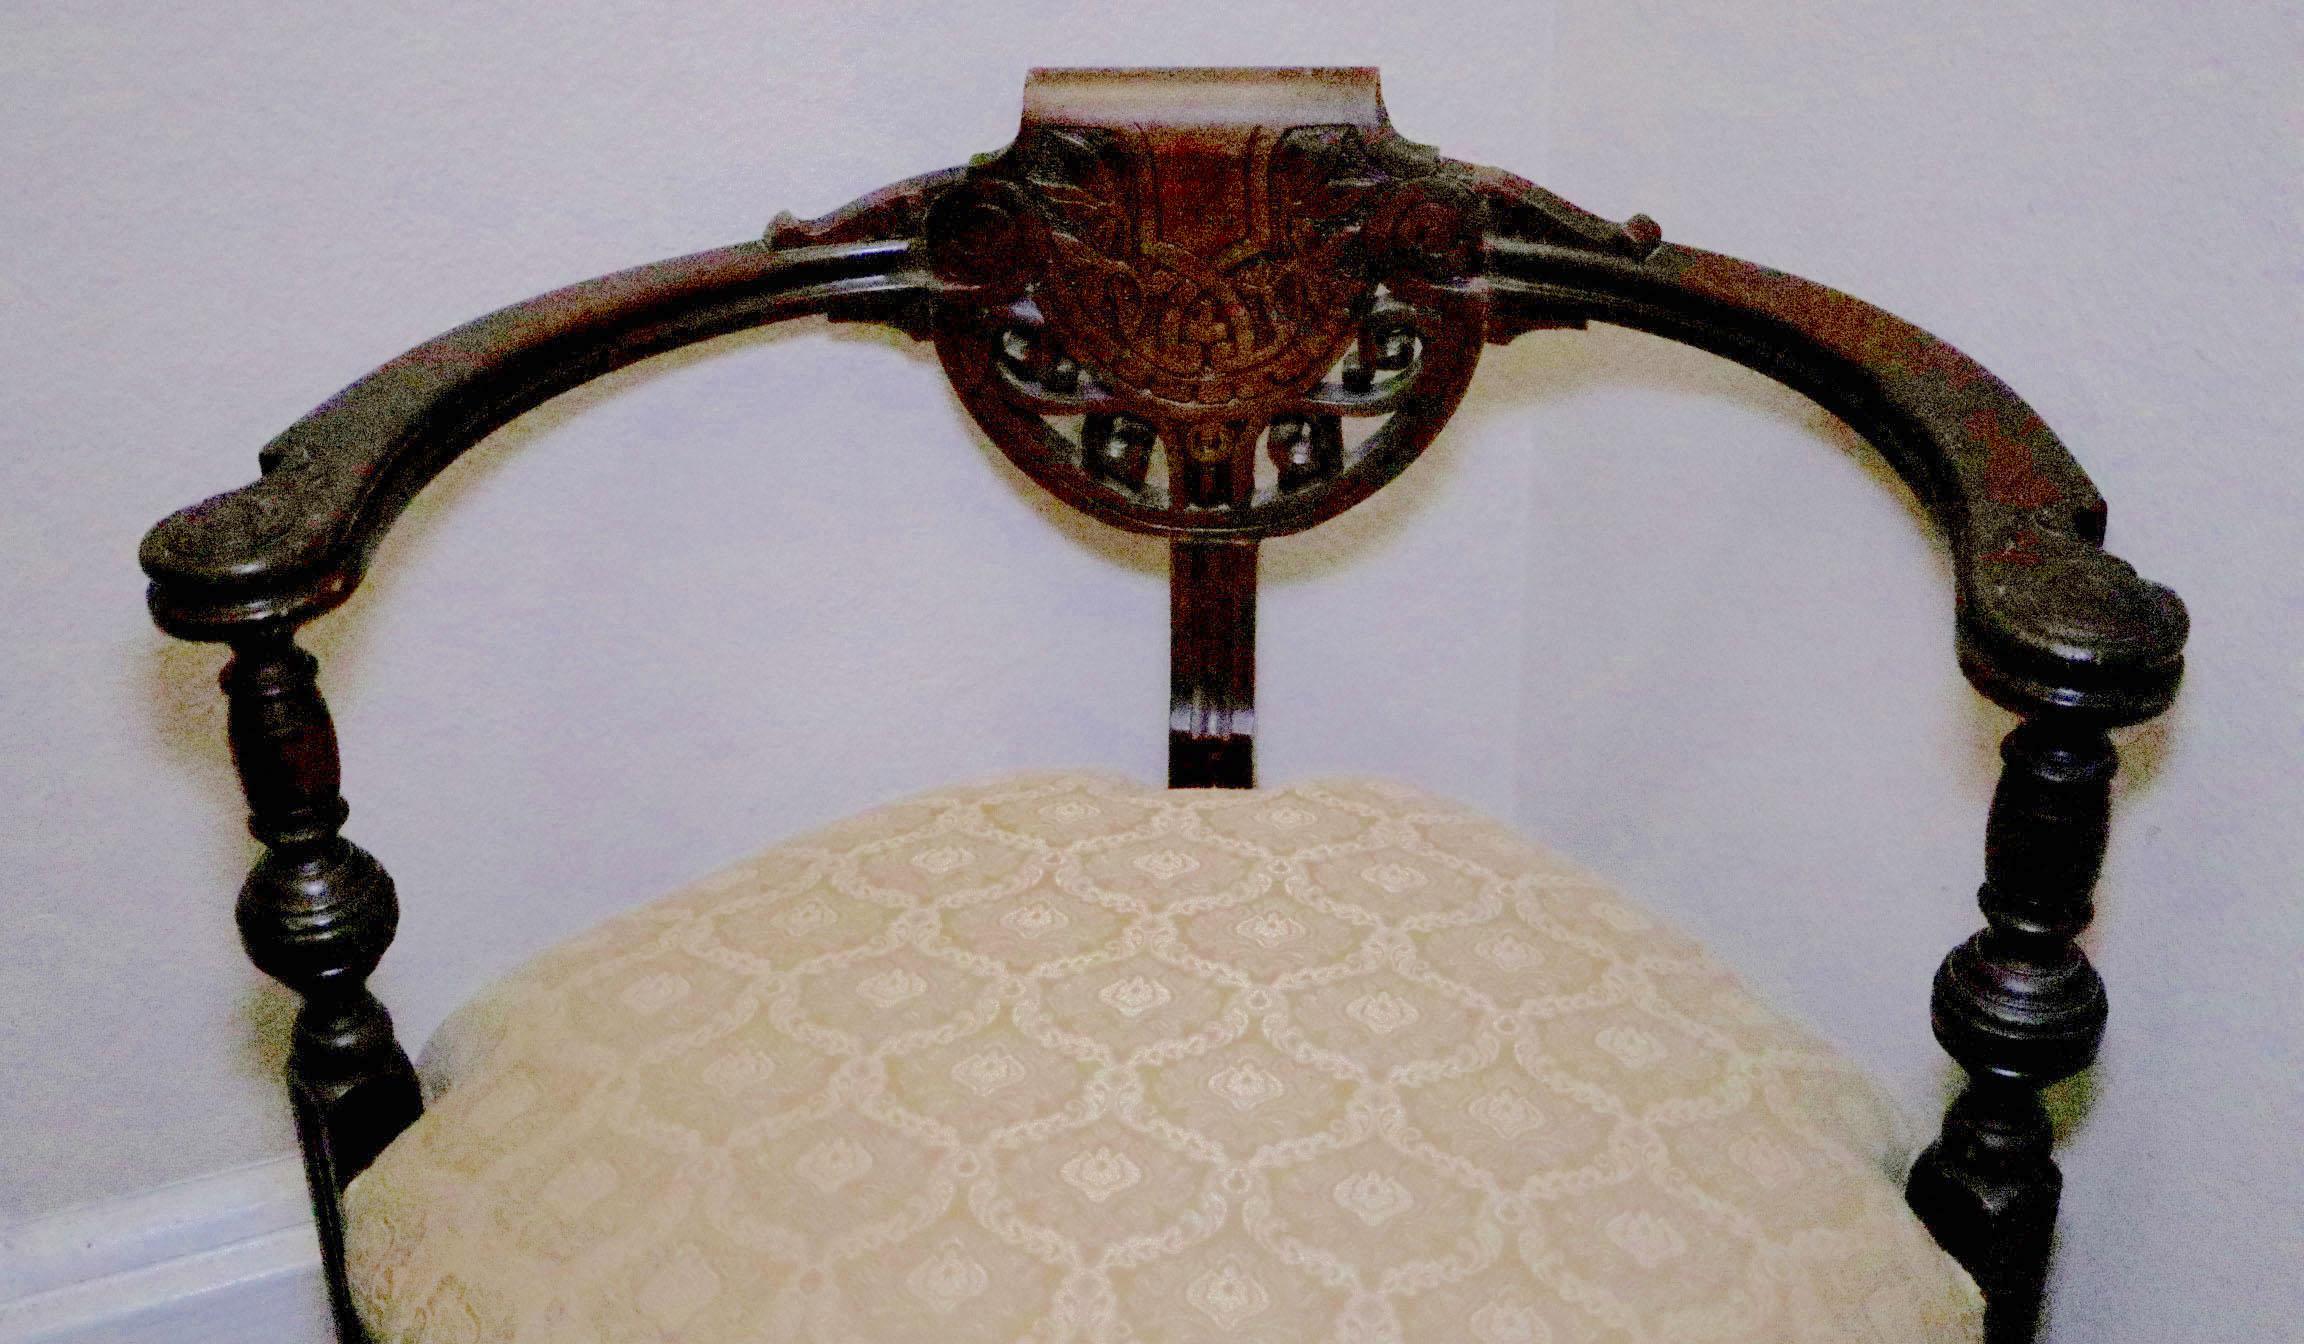 Cette chaise d'angle de style Régence anglaise offre un excellent point d'observation assis. Il est fabriqué en noyer, vers 1900 - 1925, et reste super élégant 120 ans plus tard. 
Le design de l'écusson de centrage sur le dos arrondi et le splat